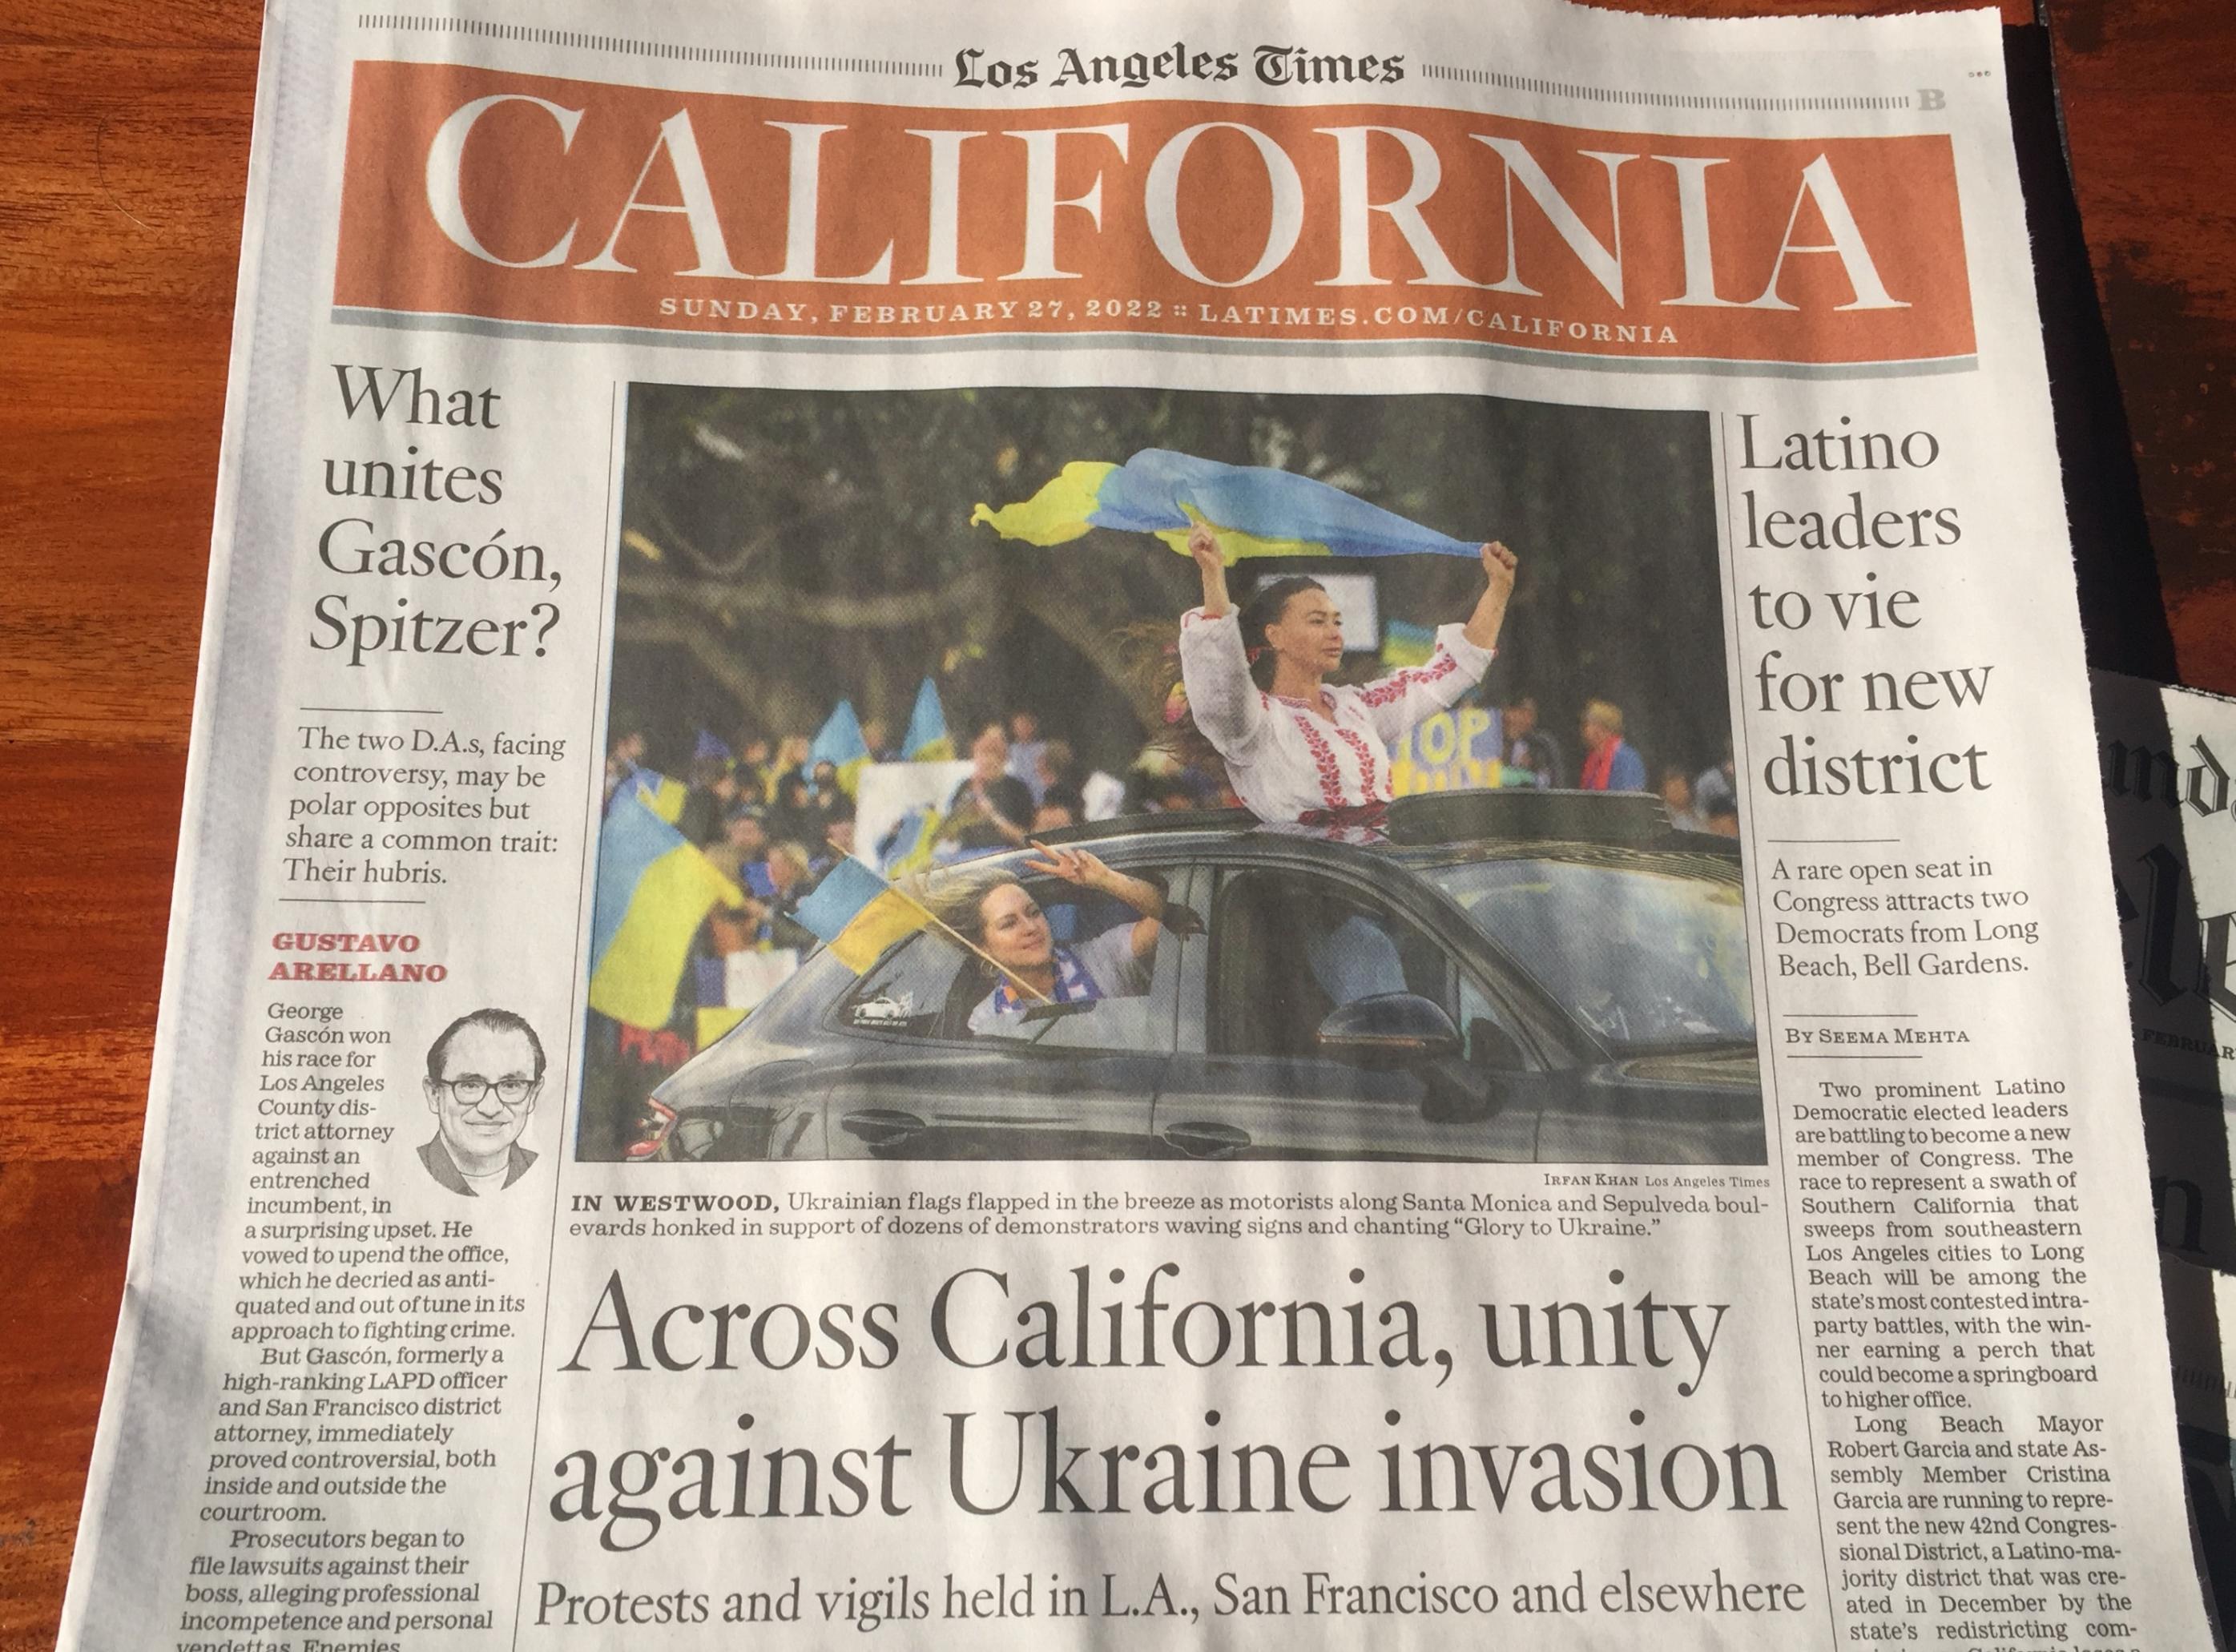 Auf dem Titelblatt steht die Schlagzeile, dass Kalifornien die Ukraine unterstützt